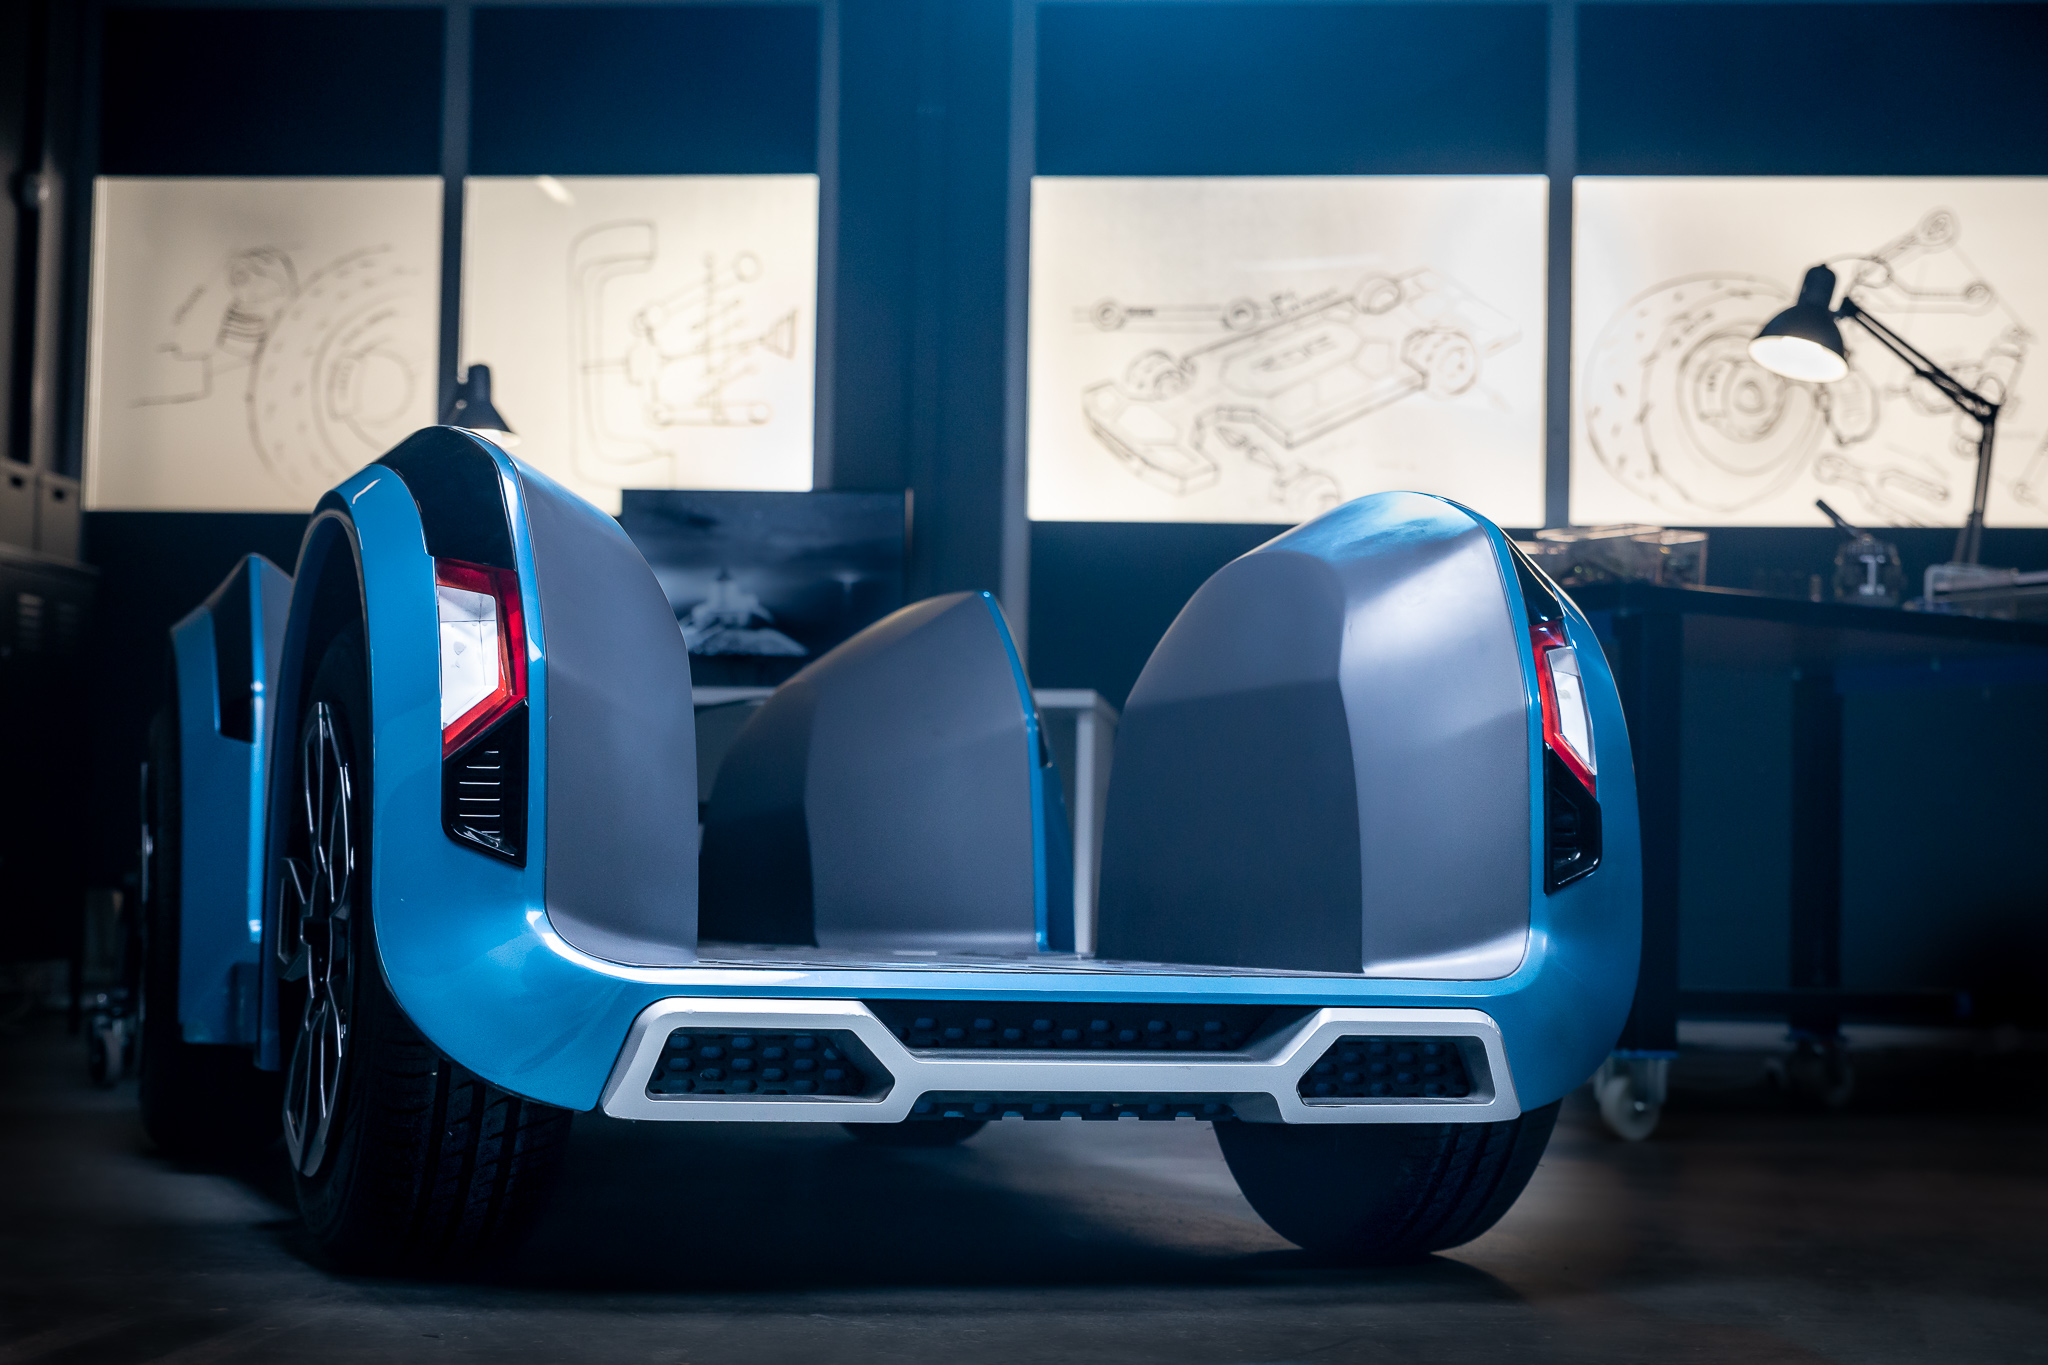 MUSE Design Winners - REE Automotive's Next-Gen EV Platform